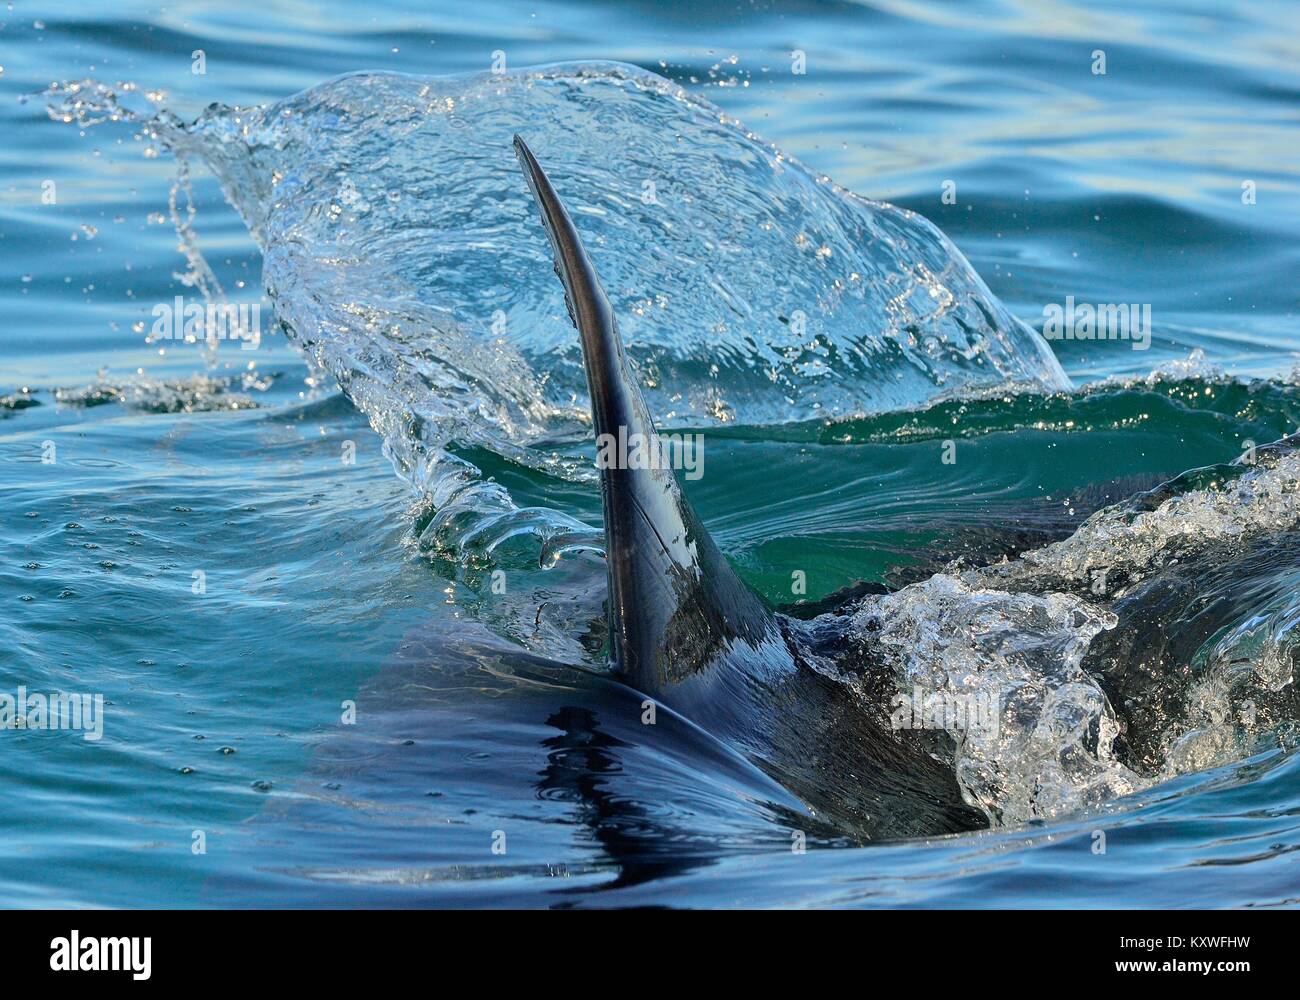 L'aileron de requin au-dessus de l'eau. Libre Fin d'un grand requin blanc (Carcharodon carcharias), nager à la surface, False Bay, Afrique du Sud, Océan Atlantique Banque D'Images